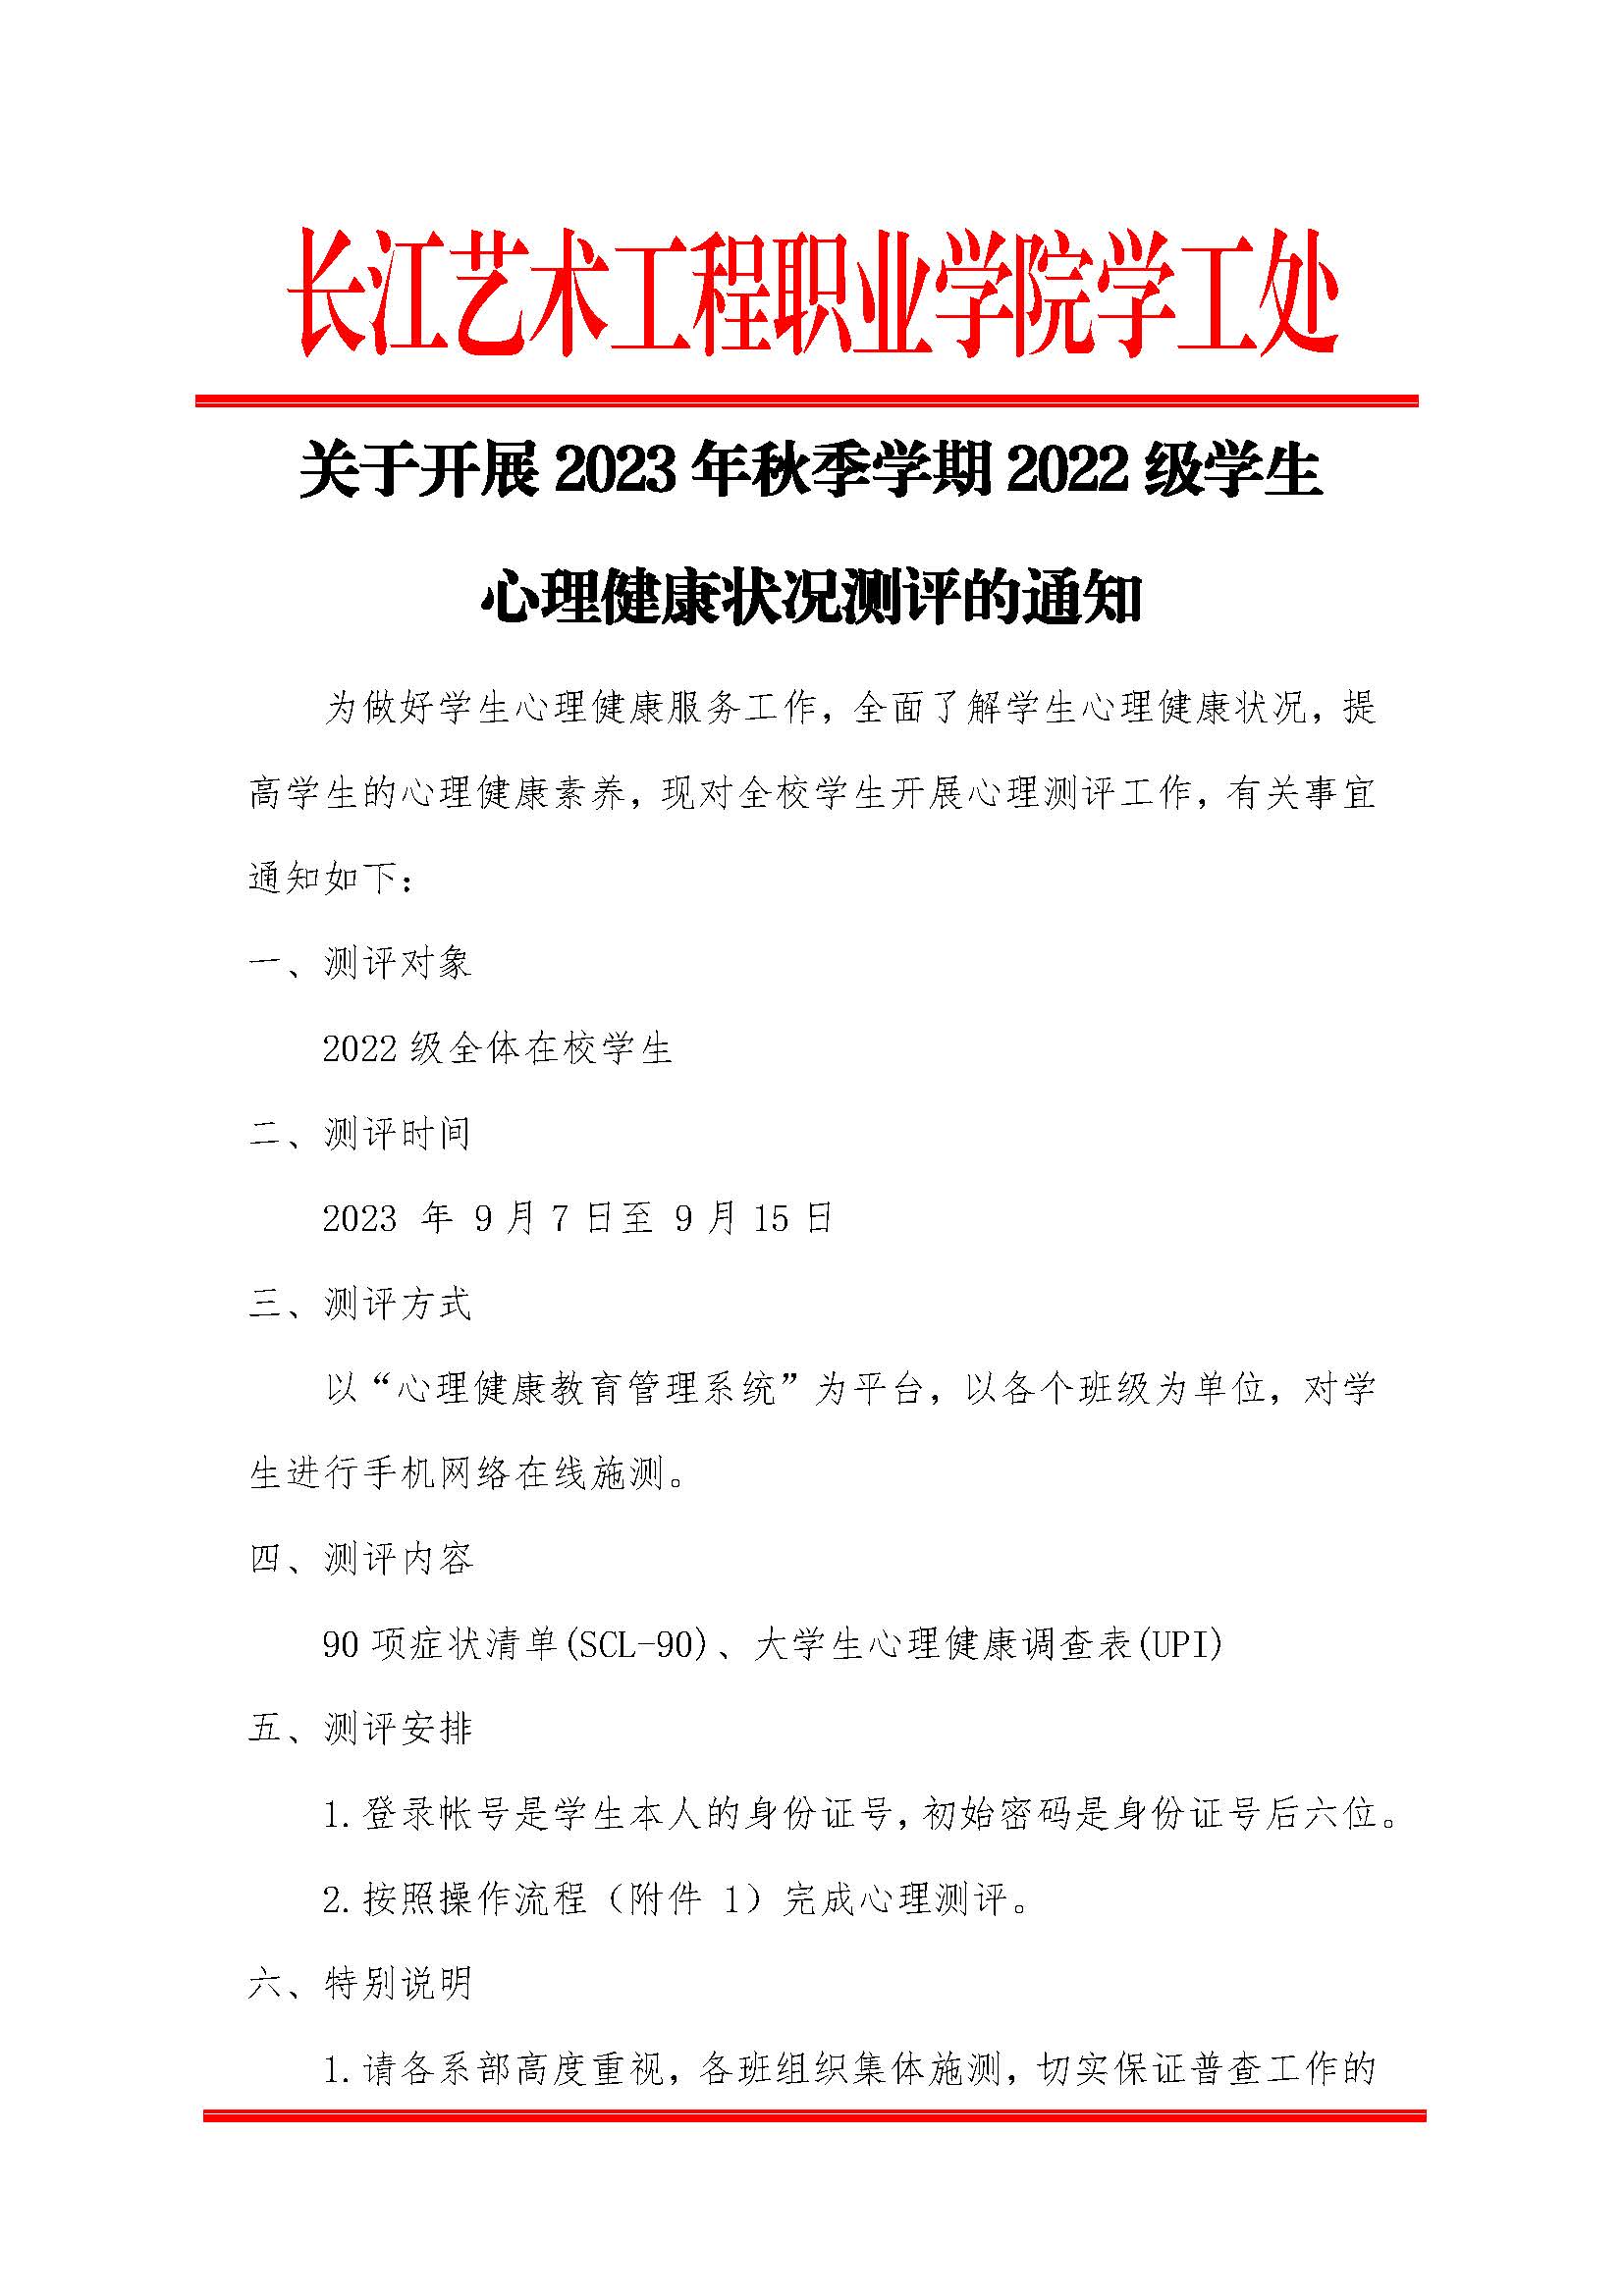 长江艺术工程职业学院学工处心理健康中心关于2022级学生心理普查通知_页面_1.jpg